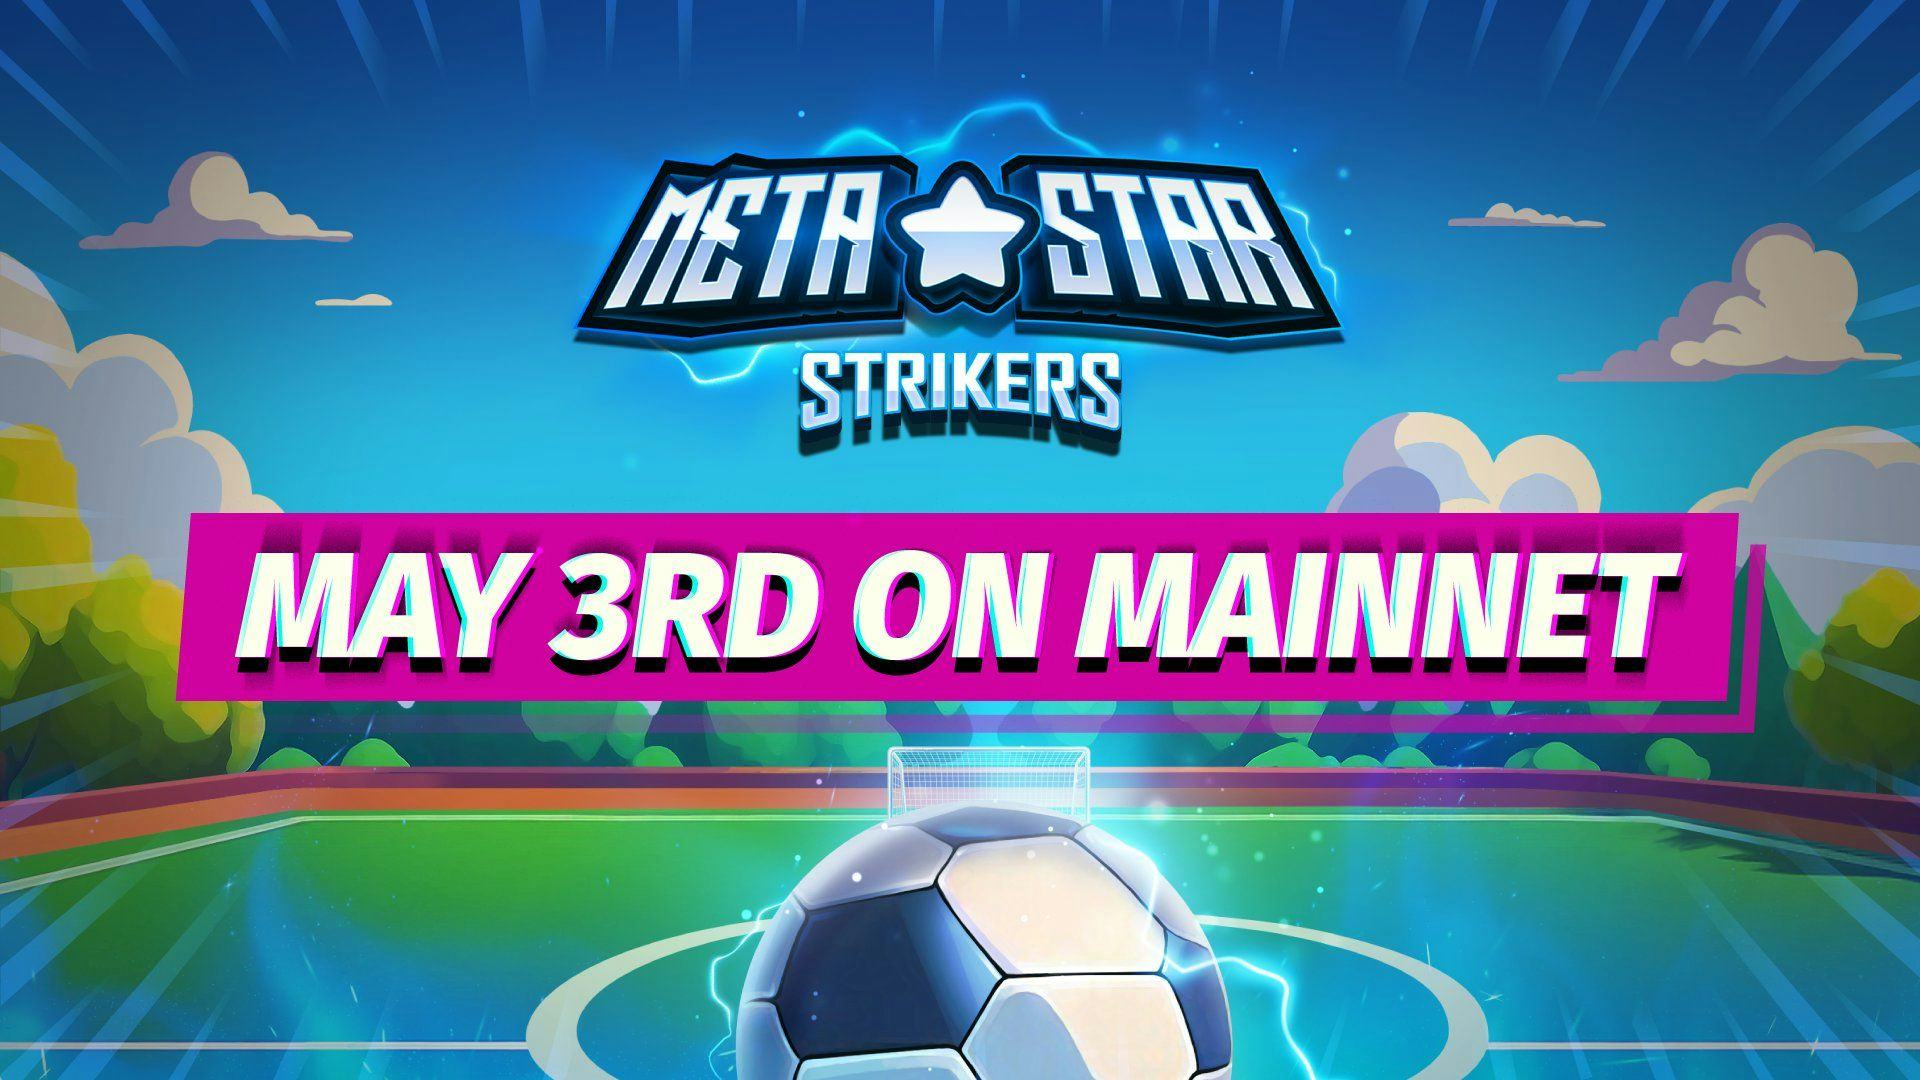 meta star strikers mainnet.jpg